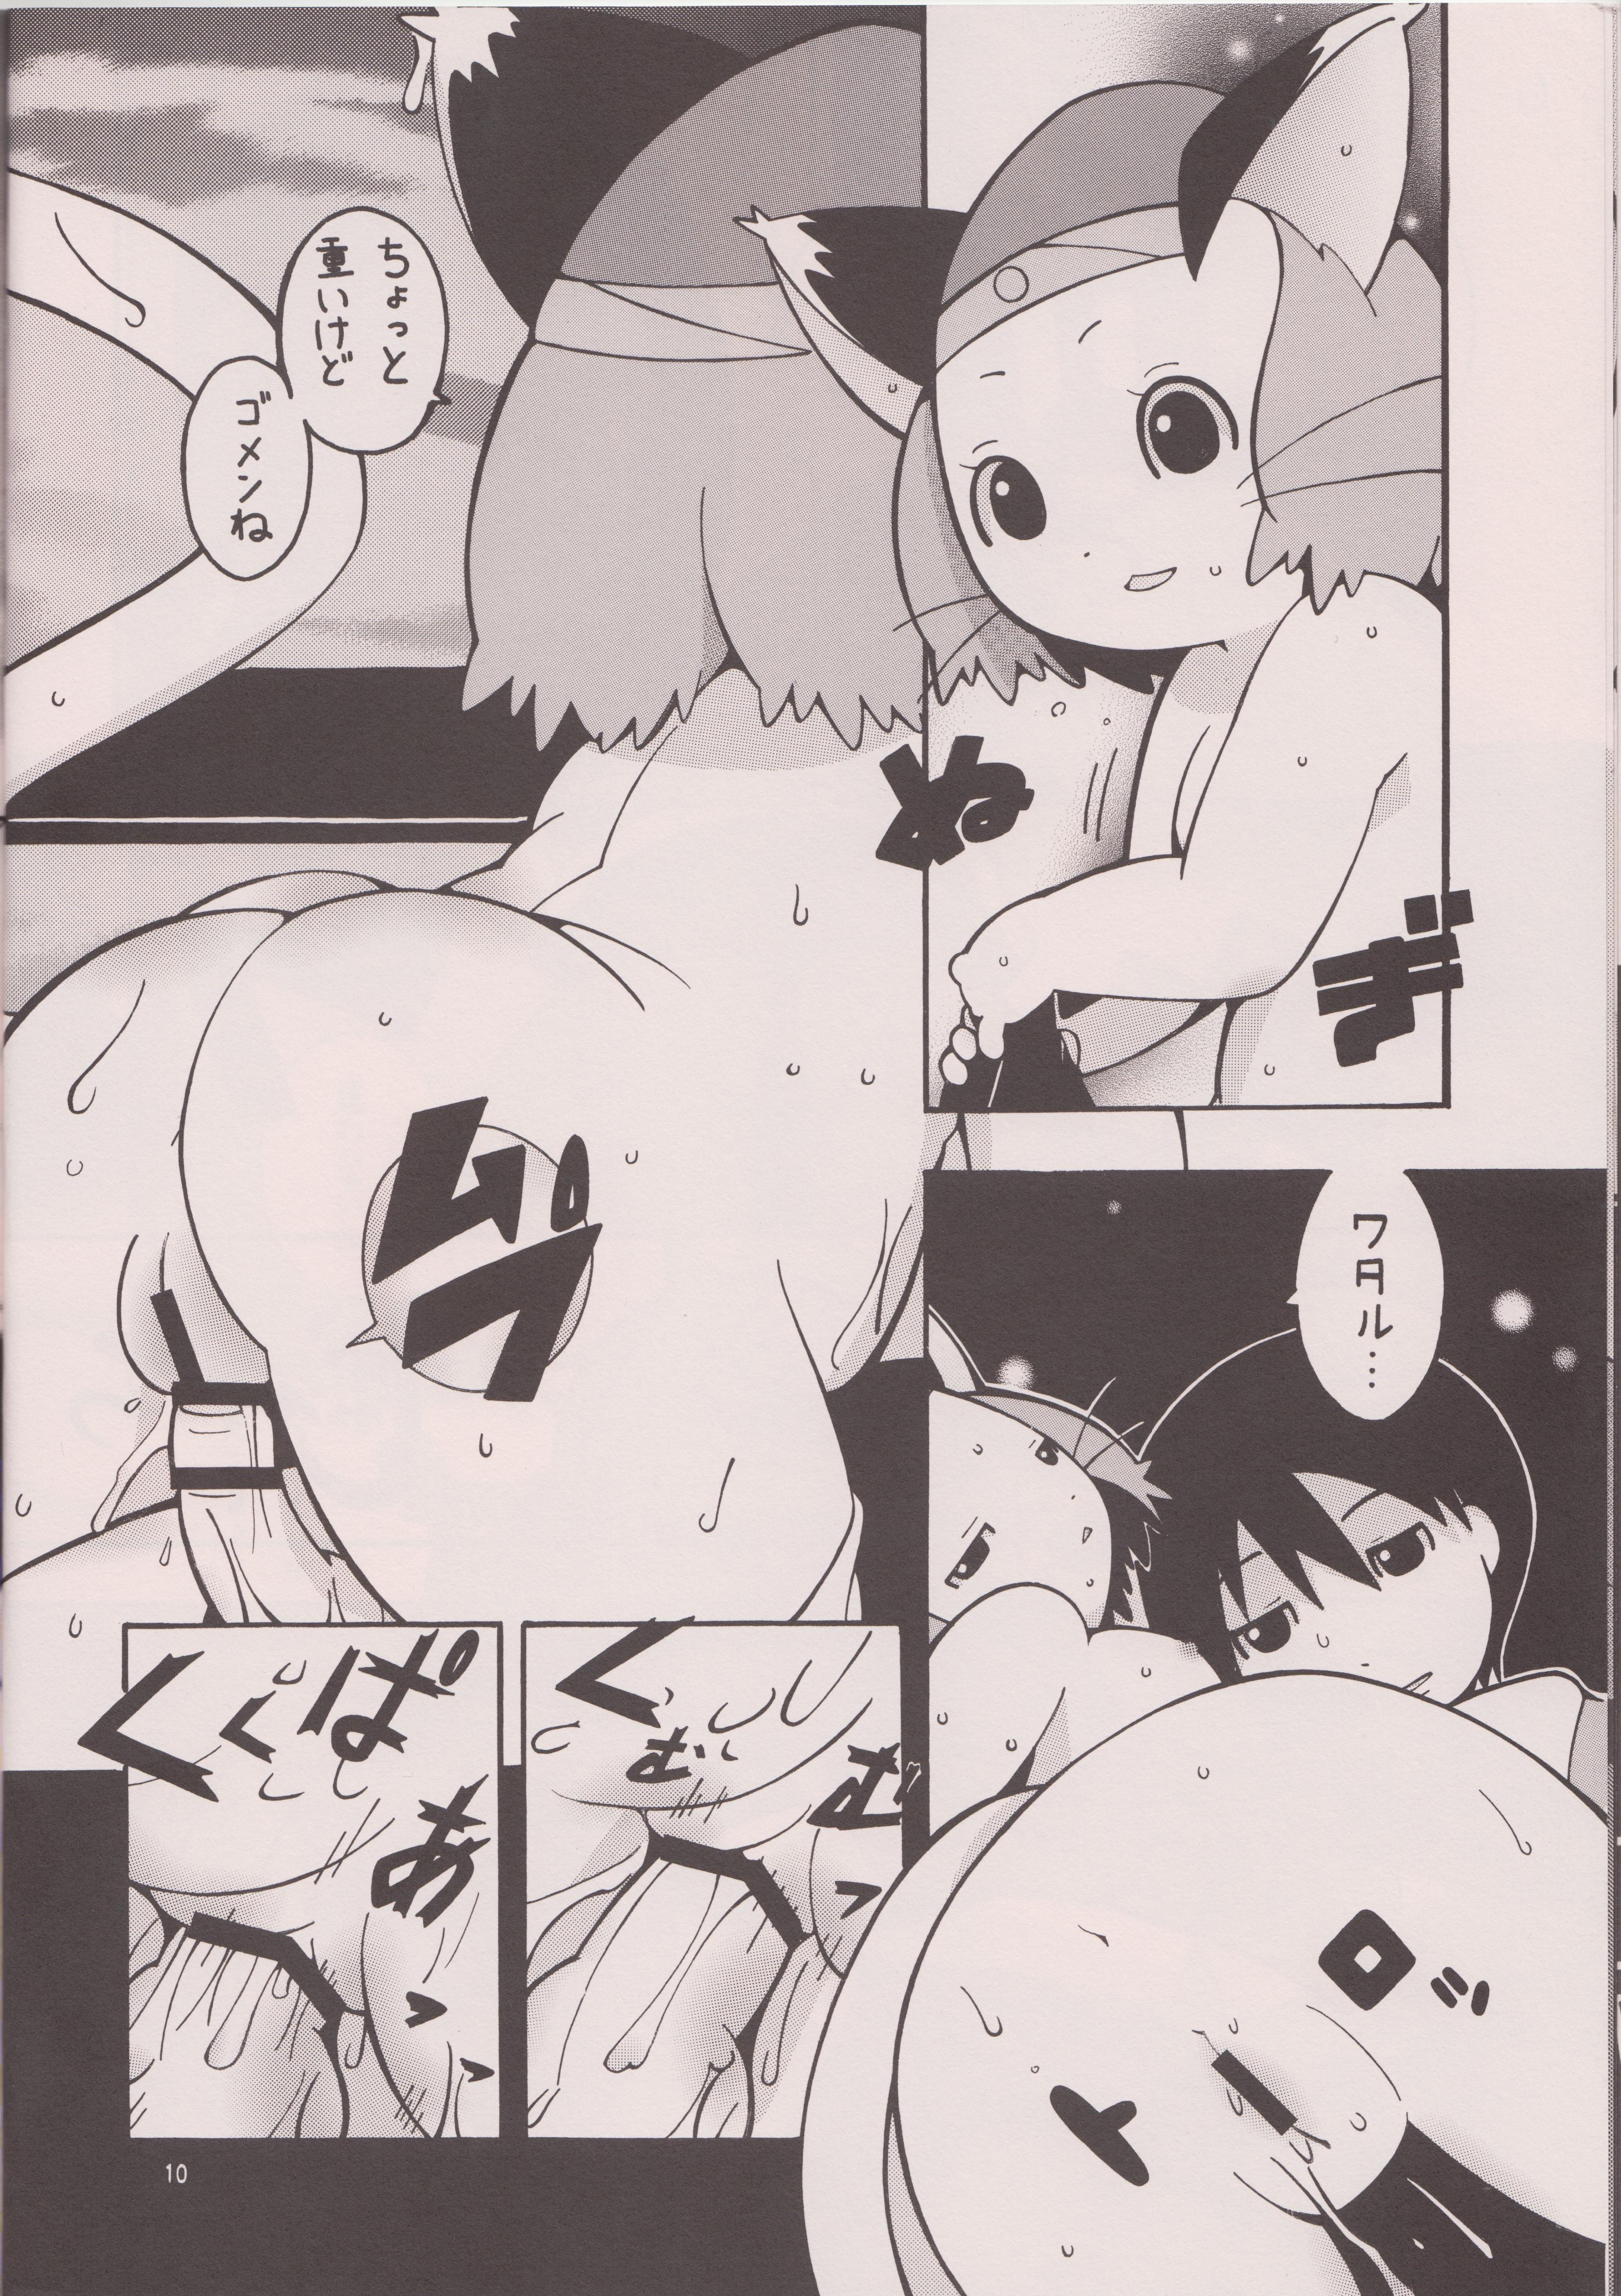 Massages Mochimochi. Mochimochimochi. - Brave story Hole - Page 9